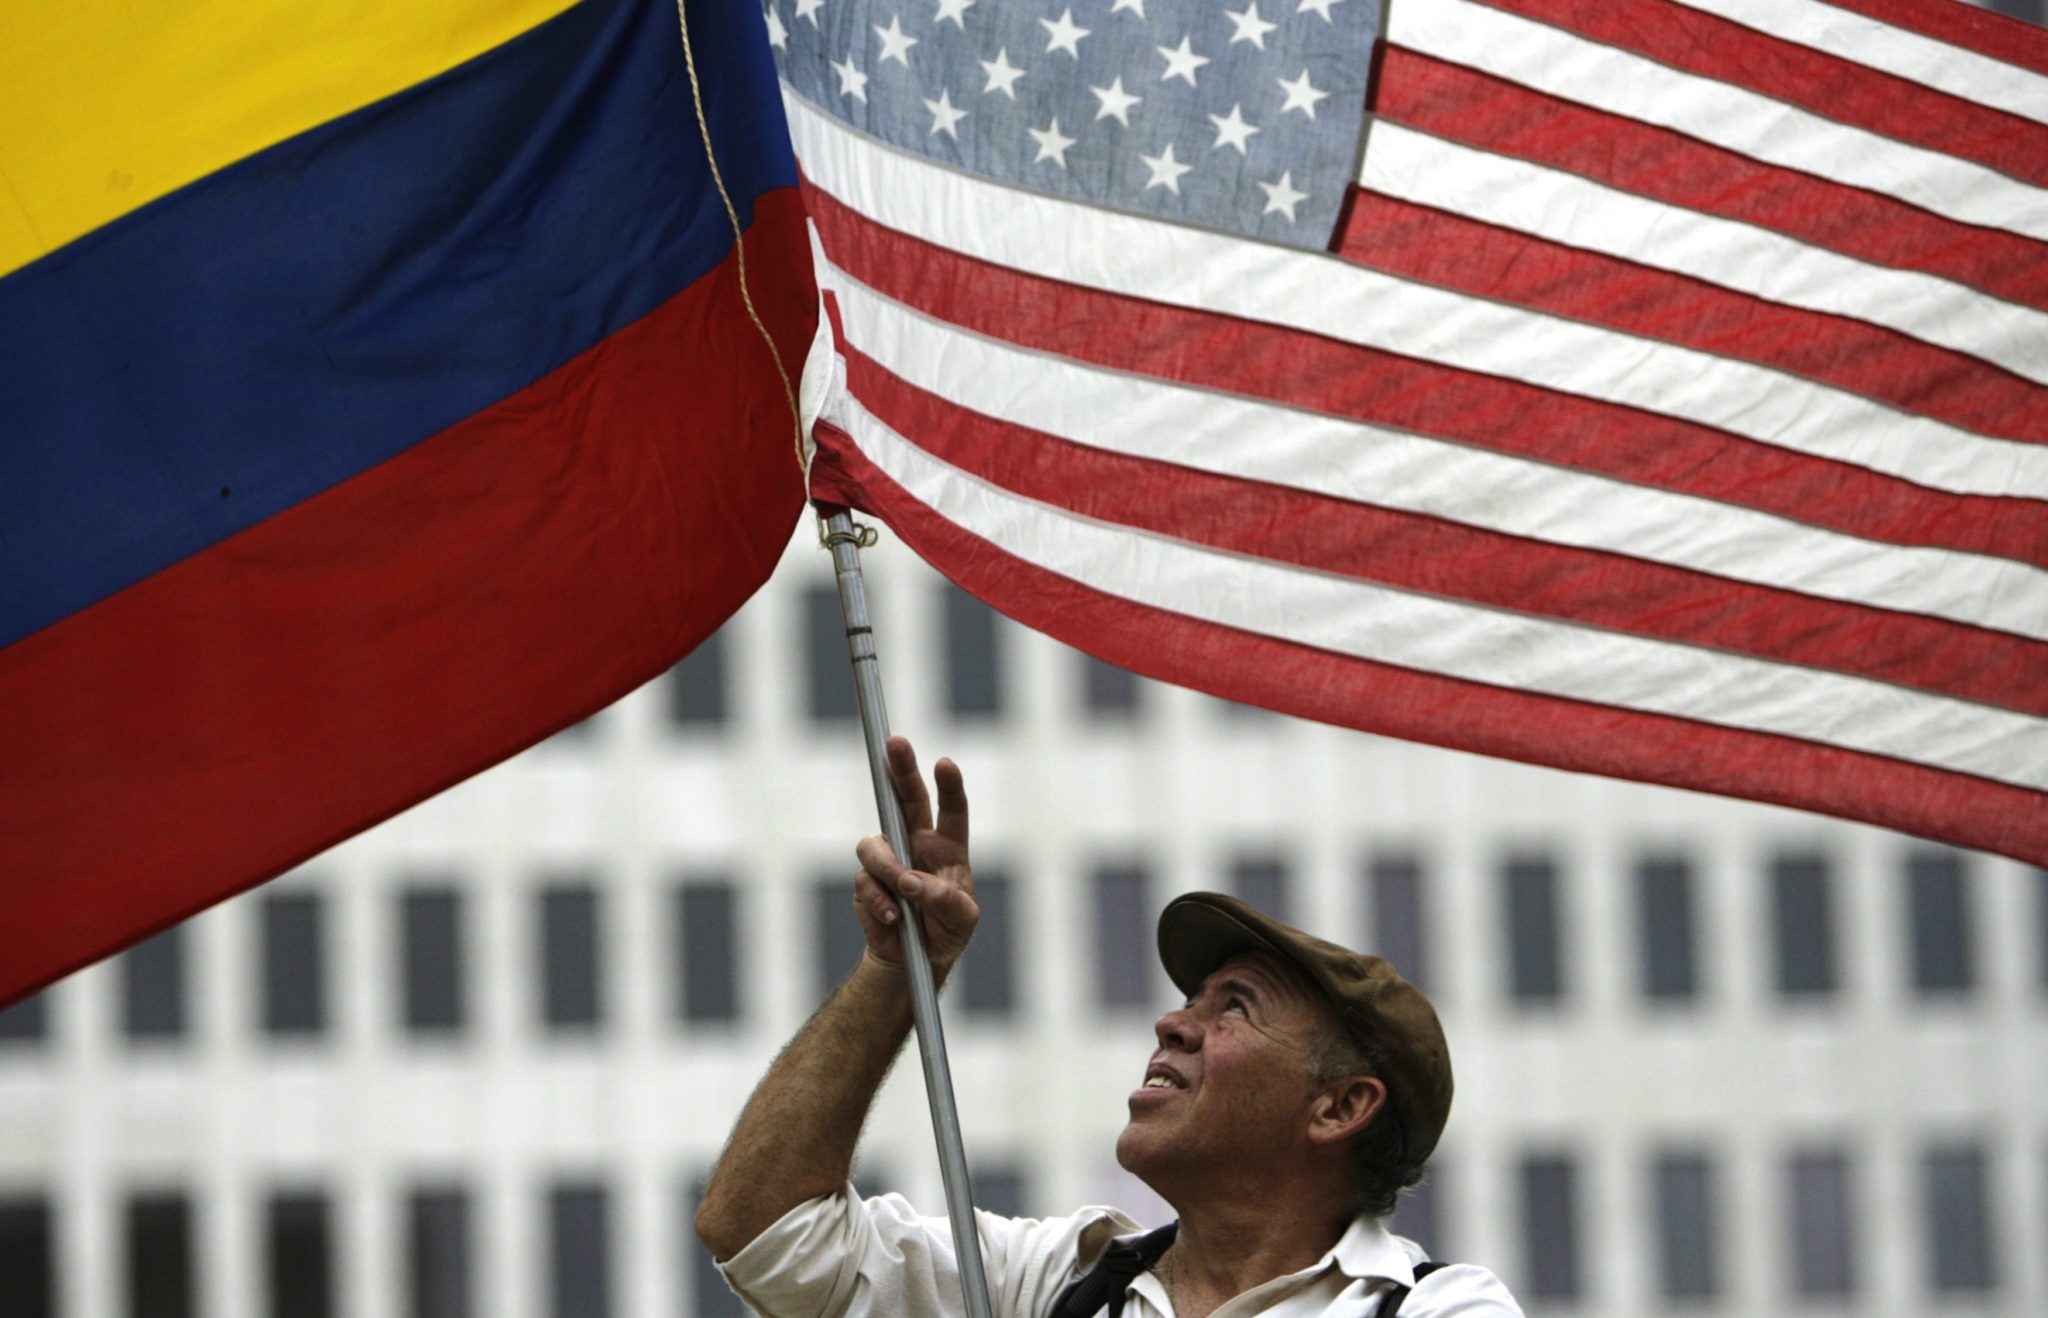 Η Κολομβία "βασικός ΜΗ Νατοϊκός Σύμμαχος" των ΗΠΑ